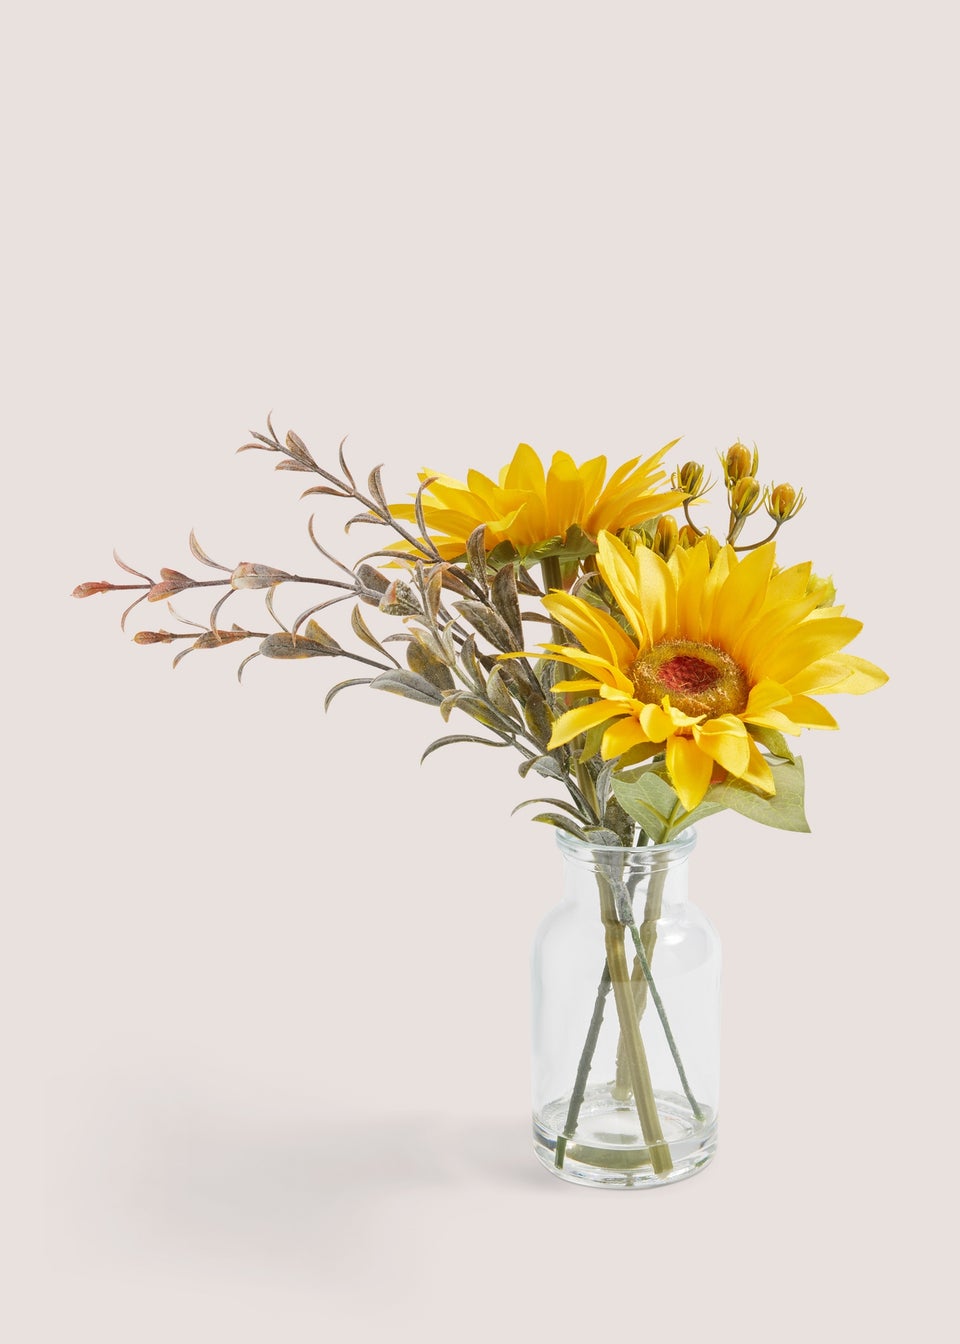 Mini Sunflowers in Glass Vase (22cm x 18cm x 18cm)